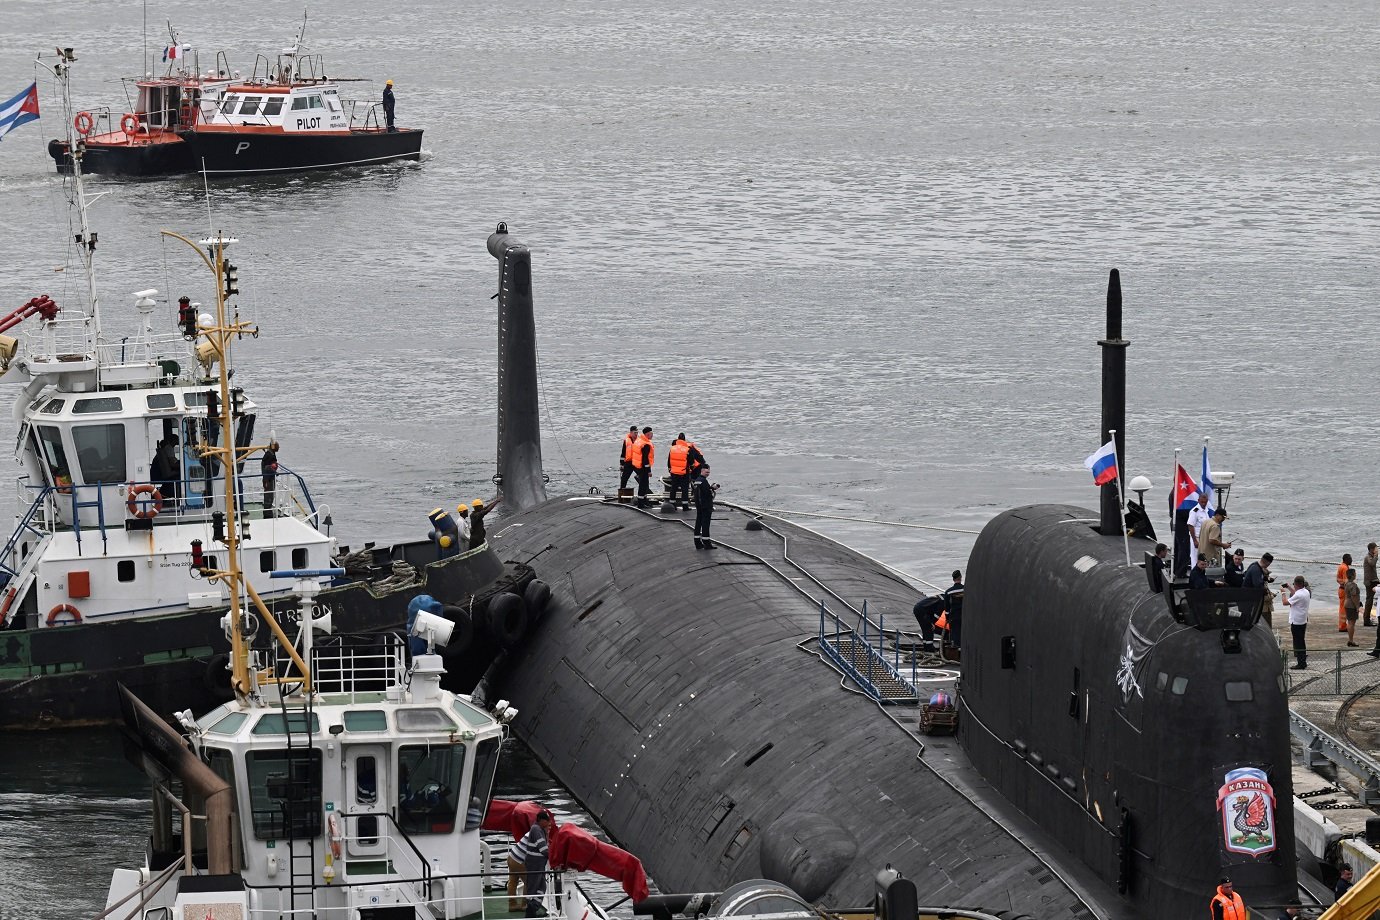 Submarino nuclear russo Kazan, parte do destacamento naval russo em visita a Cuba